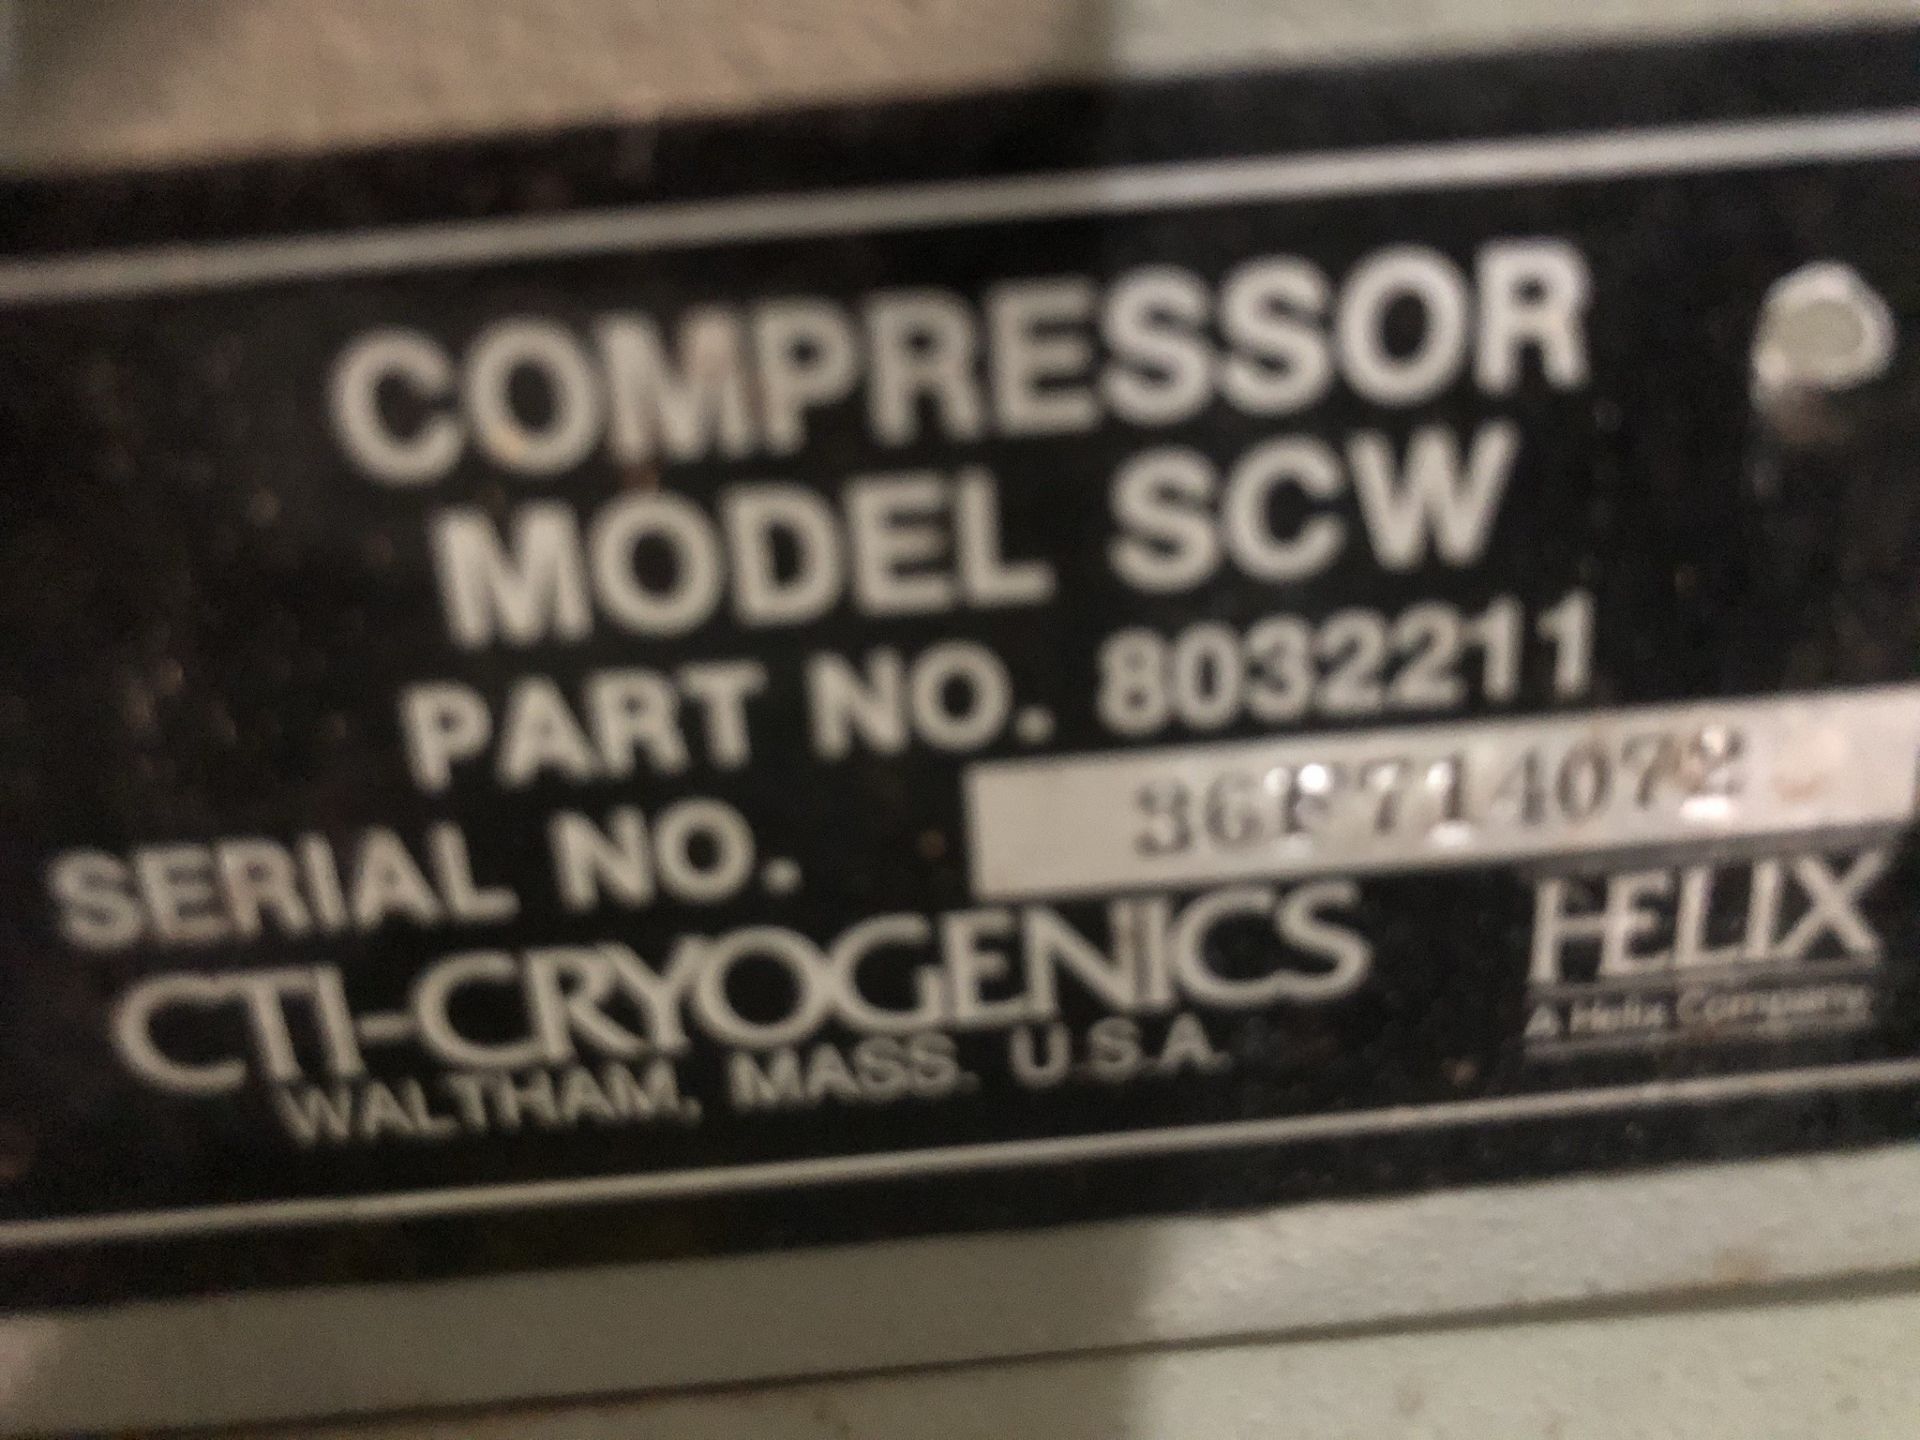 CTI model SCW helium compressor - Image 3 of 4